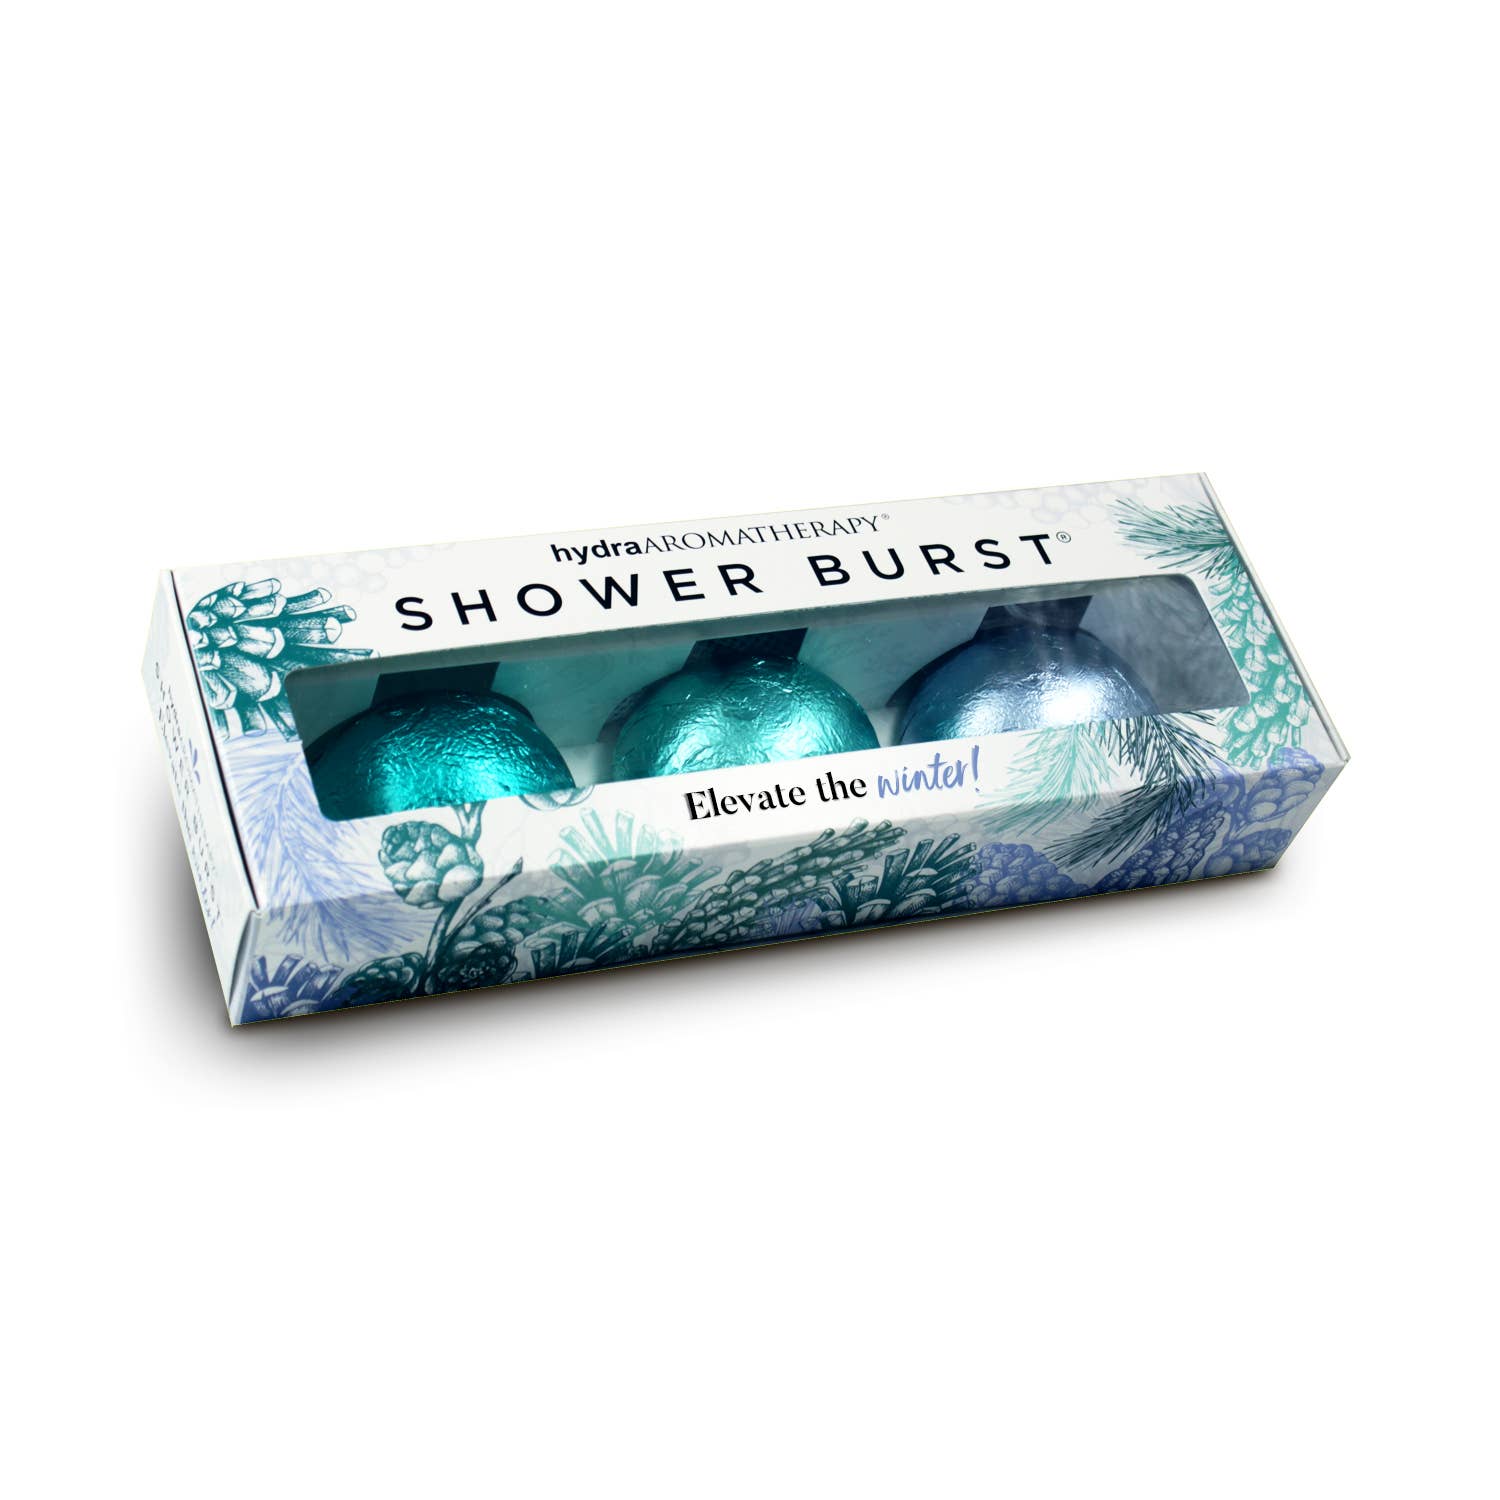 Shower Burst® Trio in Winter